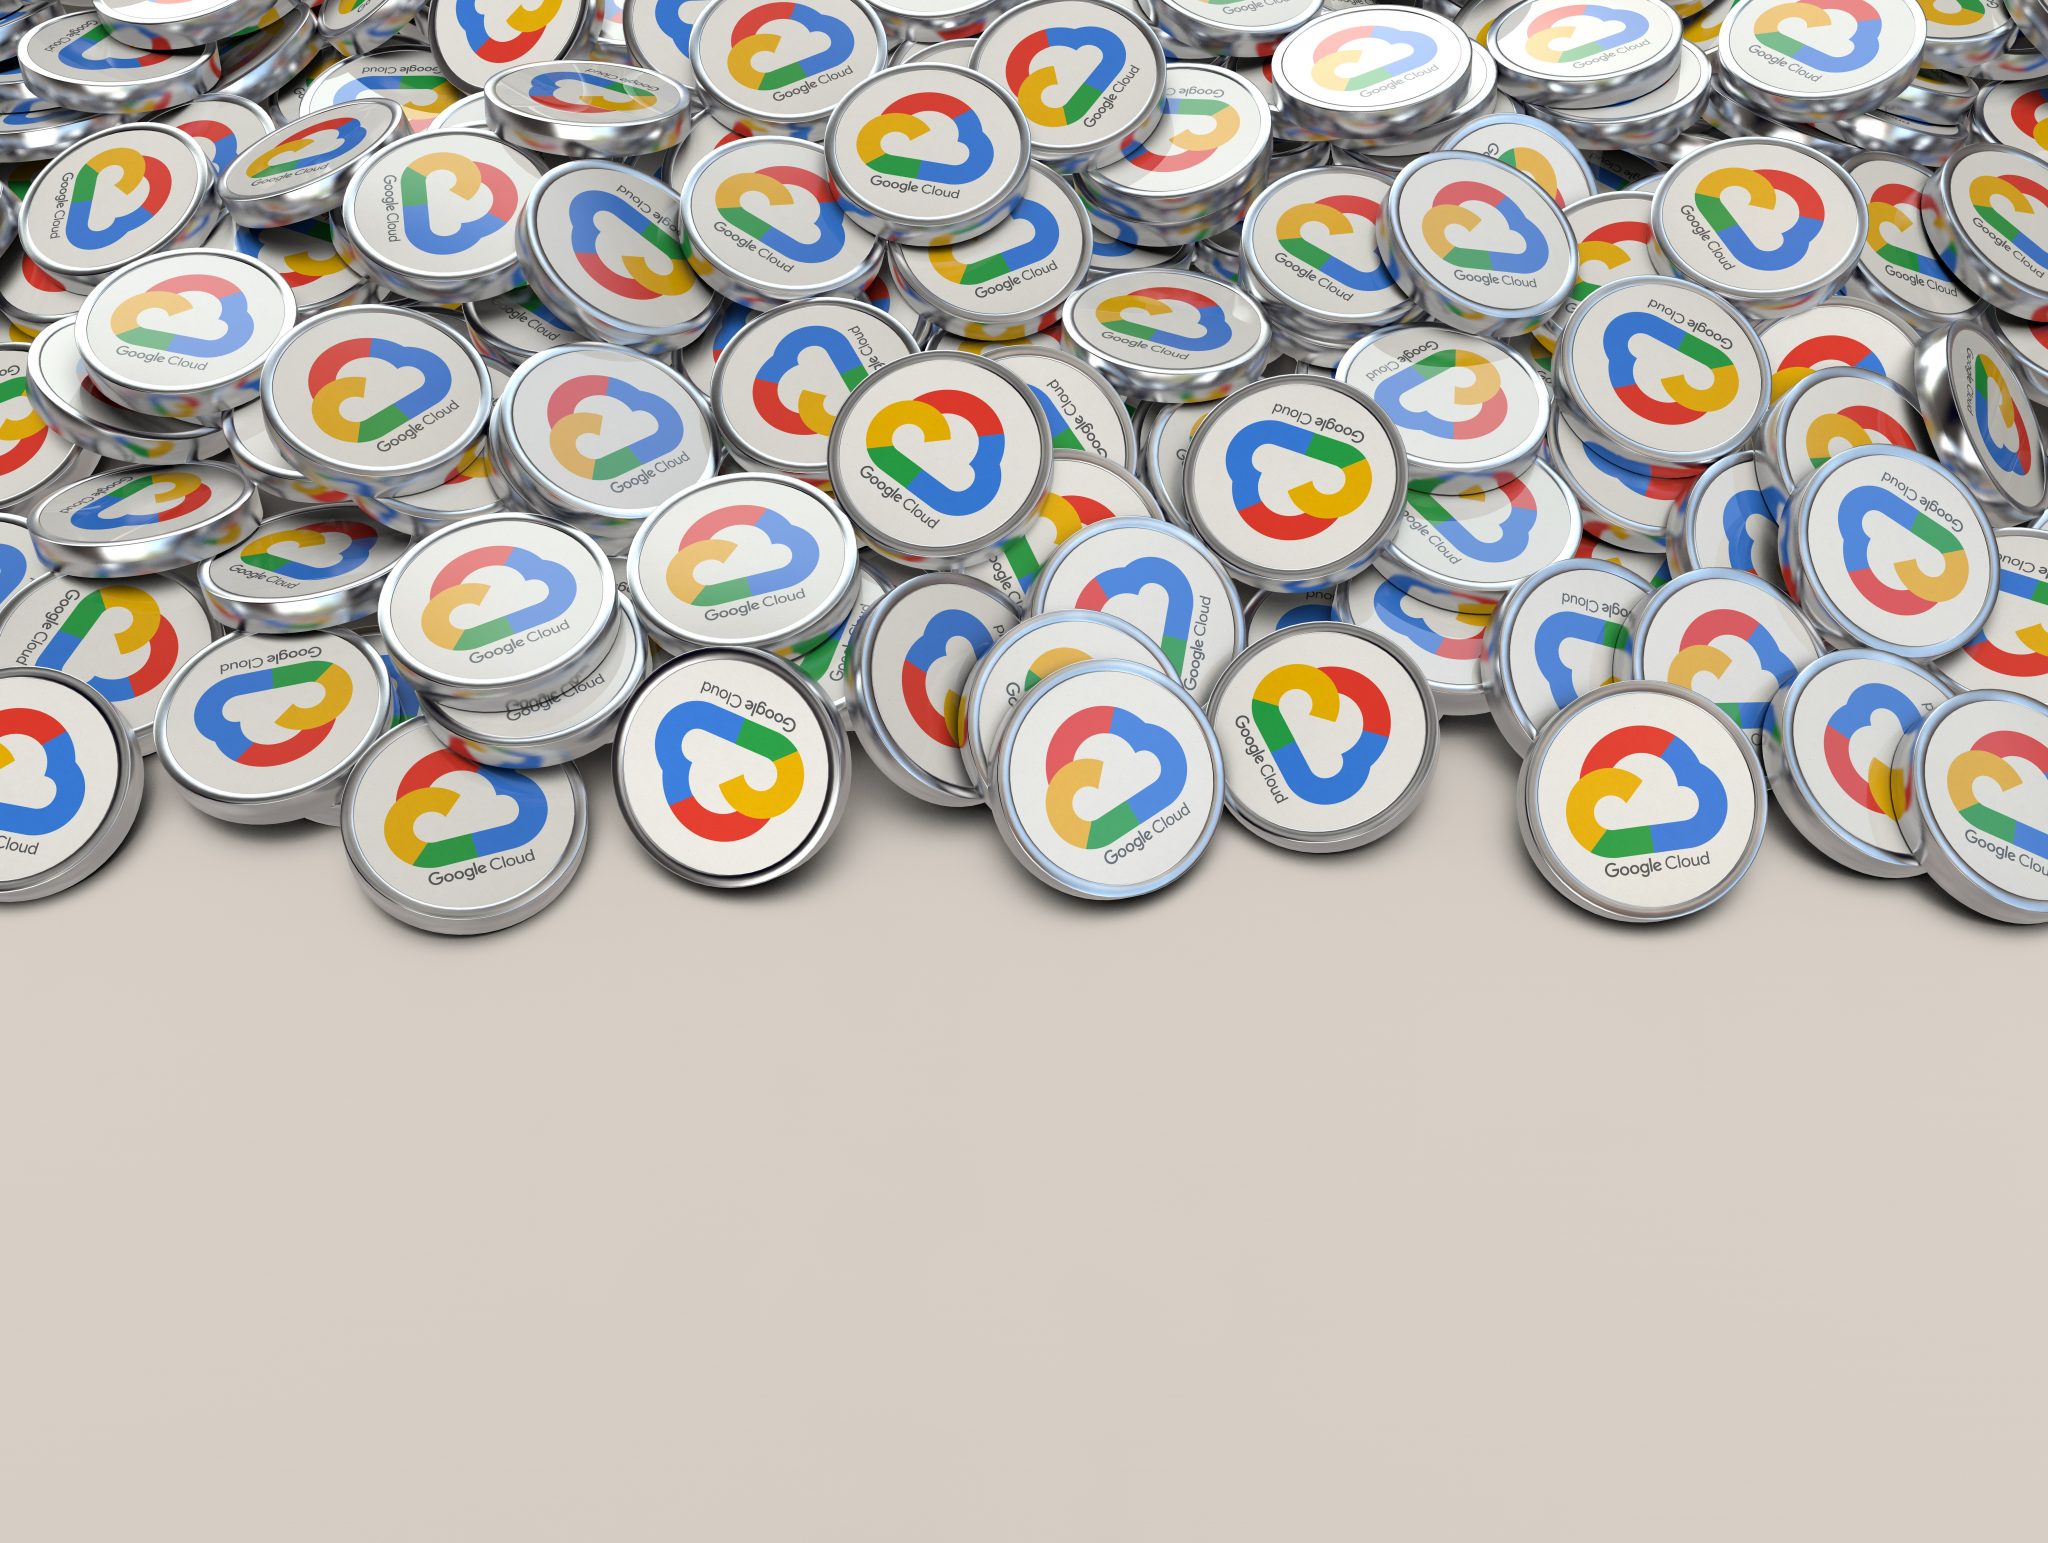 Comment Gemini irrigue les produits data de Google Cloud